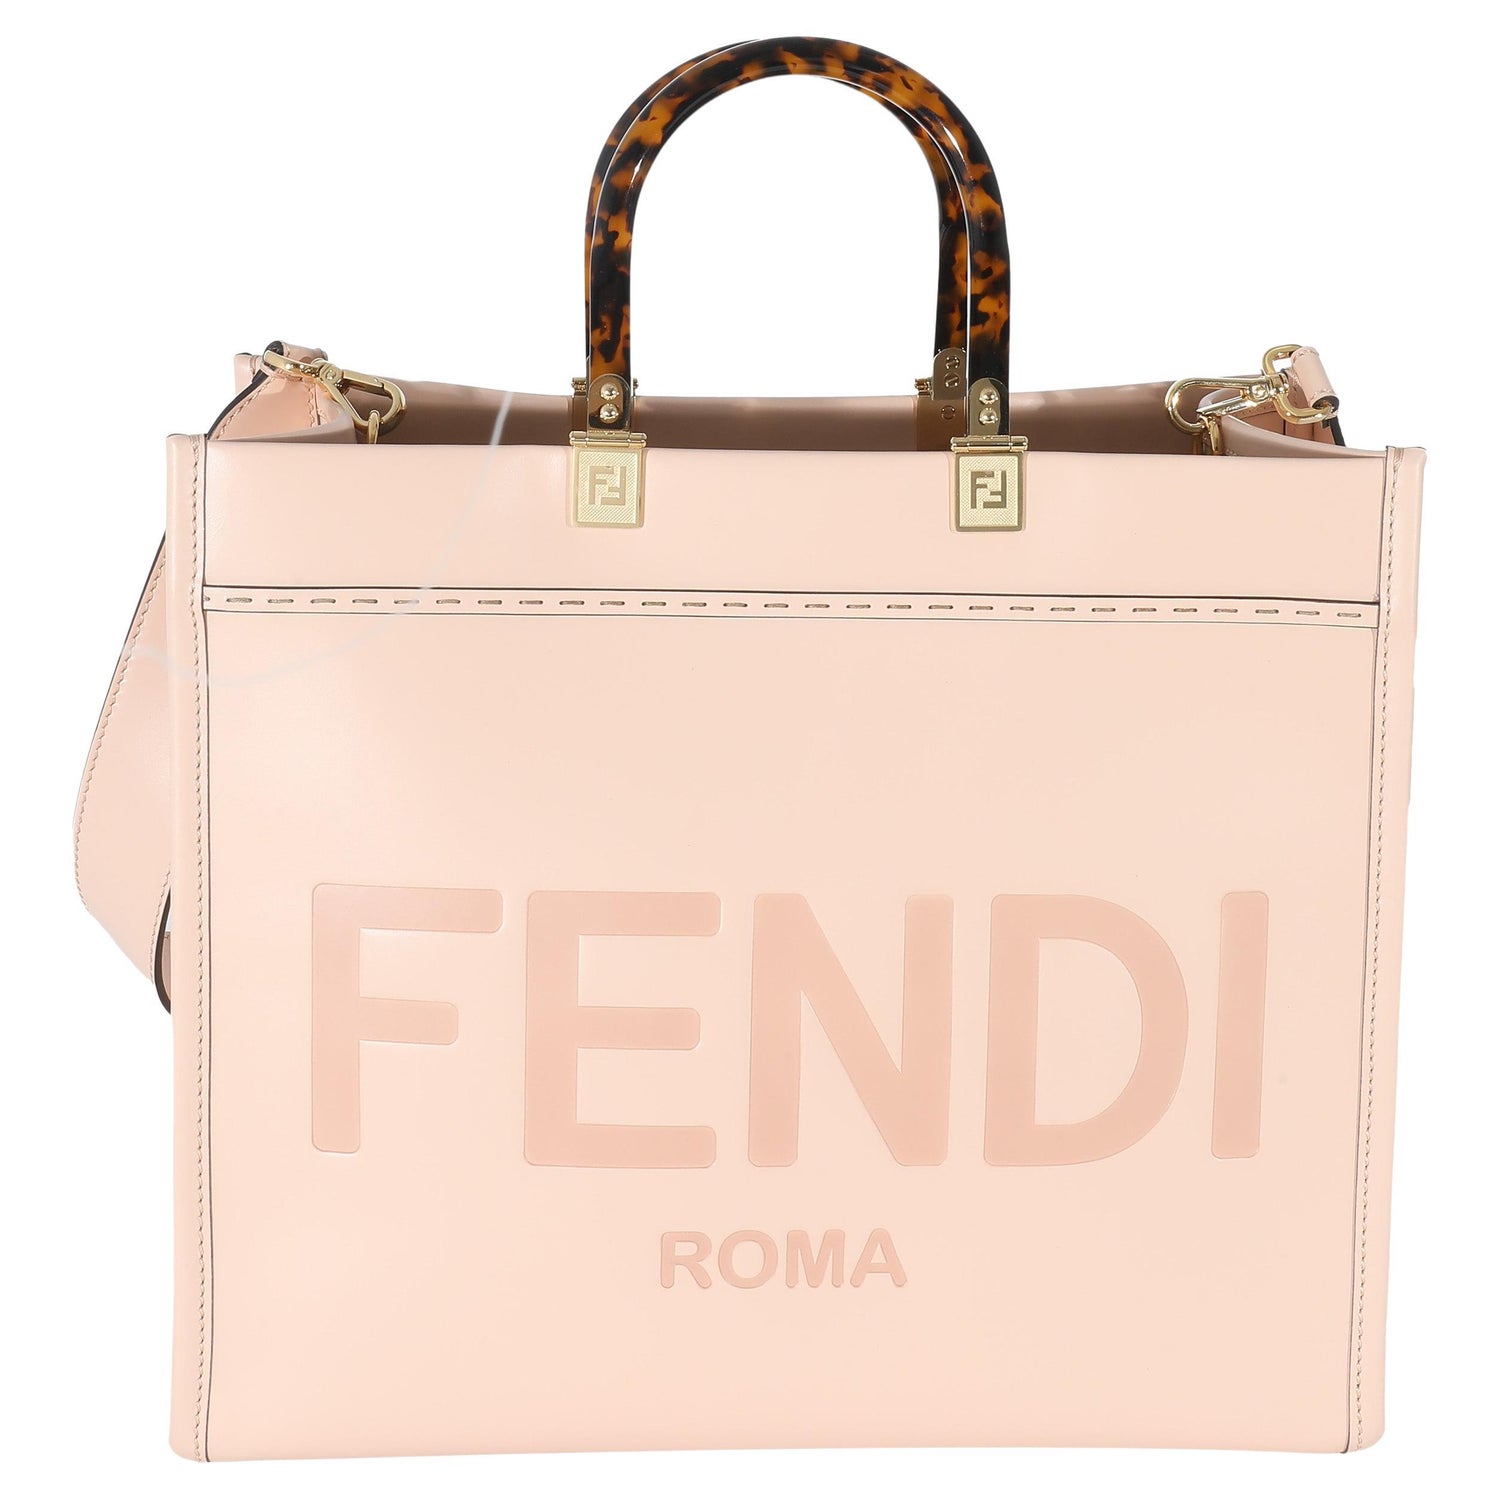 RARE Versace X Fendi Fendace Collaboration Sunshine Shopper Tote Bag F/S